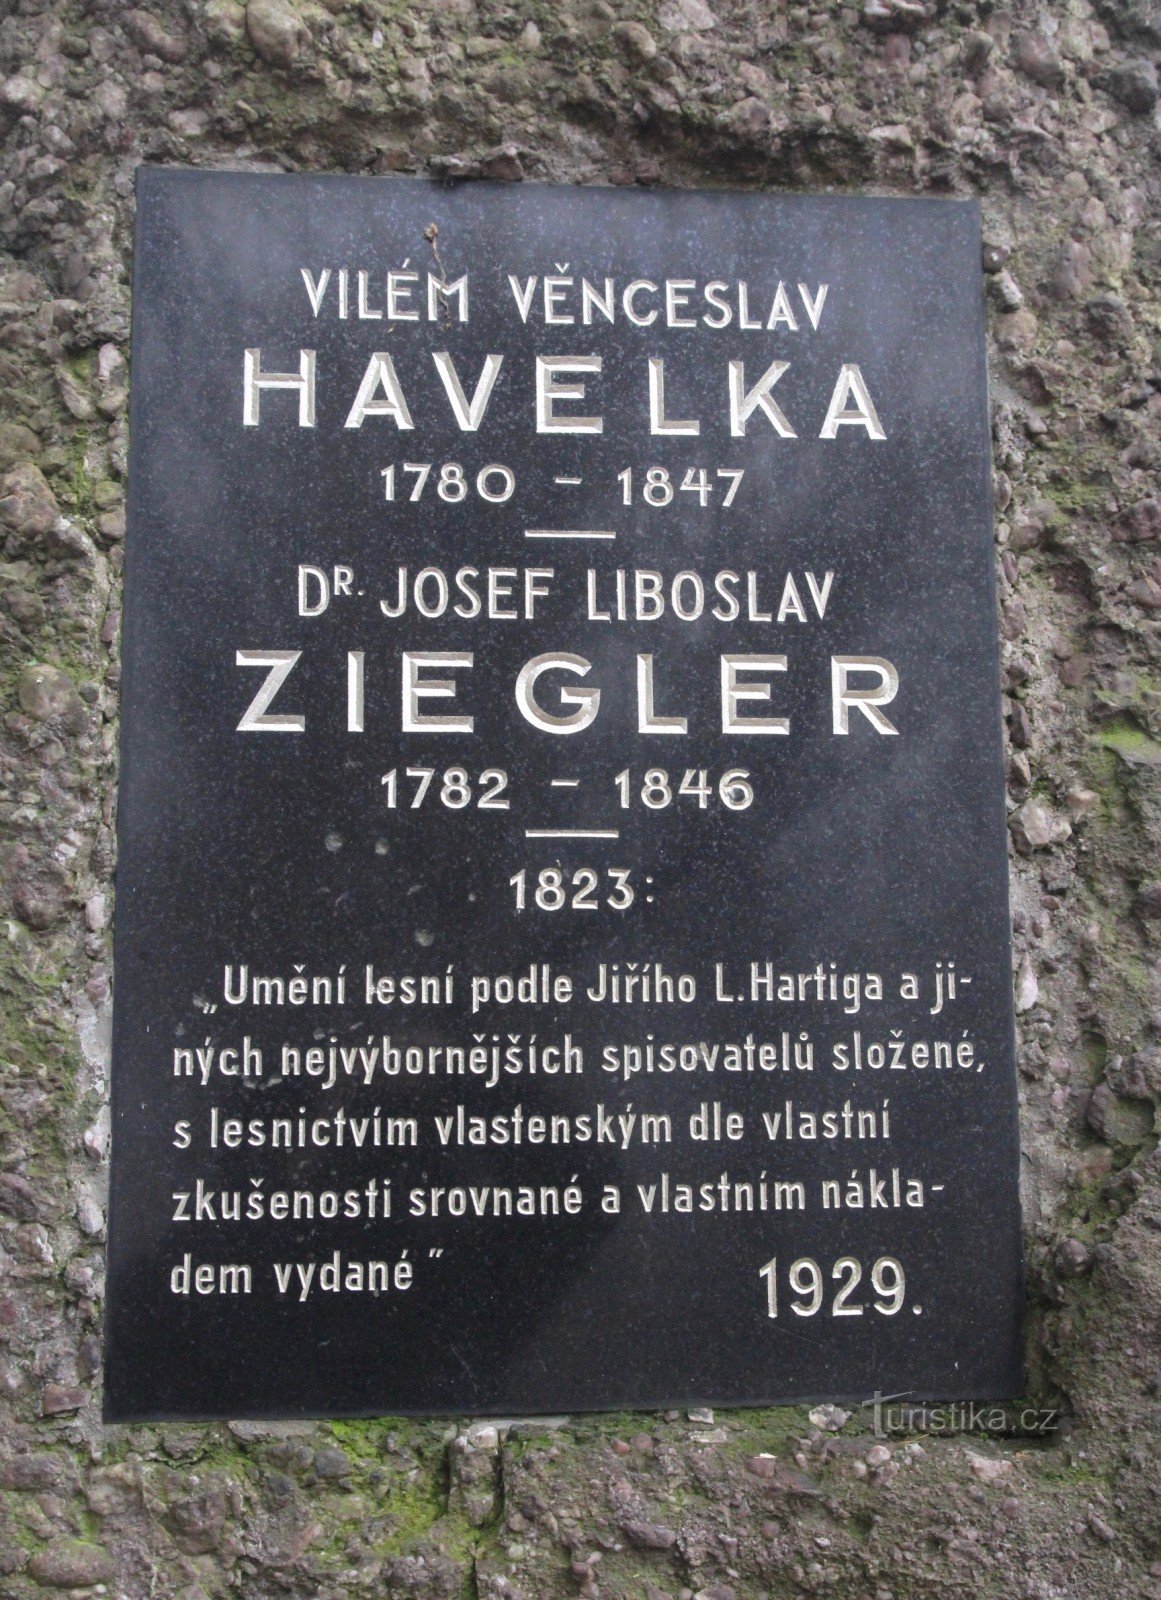 VV Havelka és JL Ziegler emlékműve